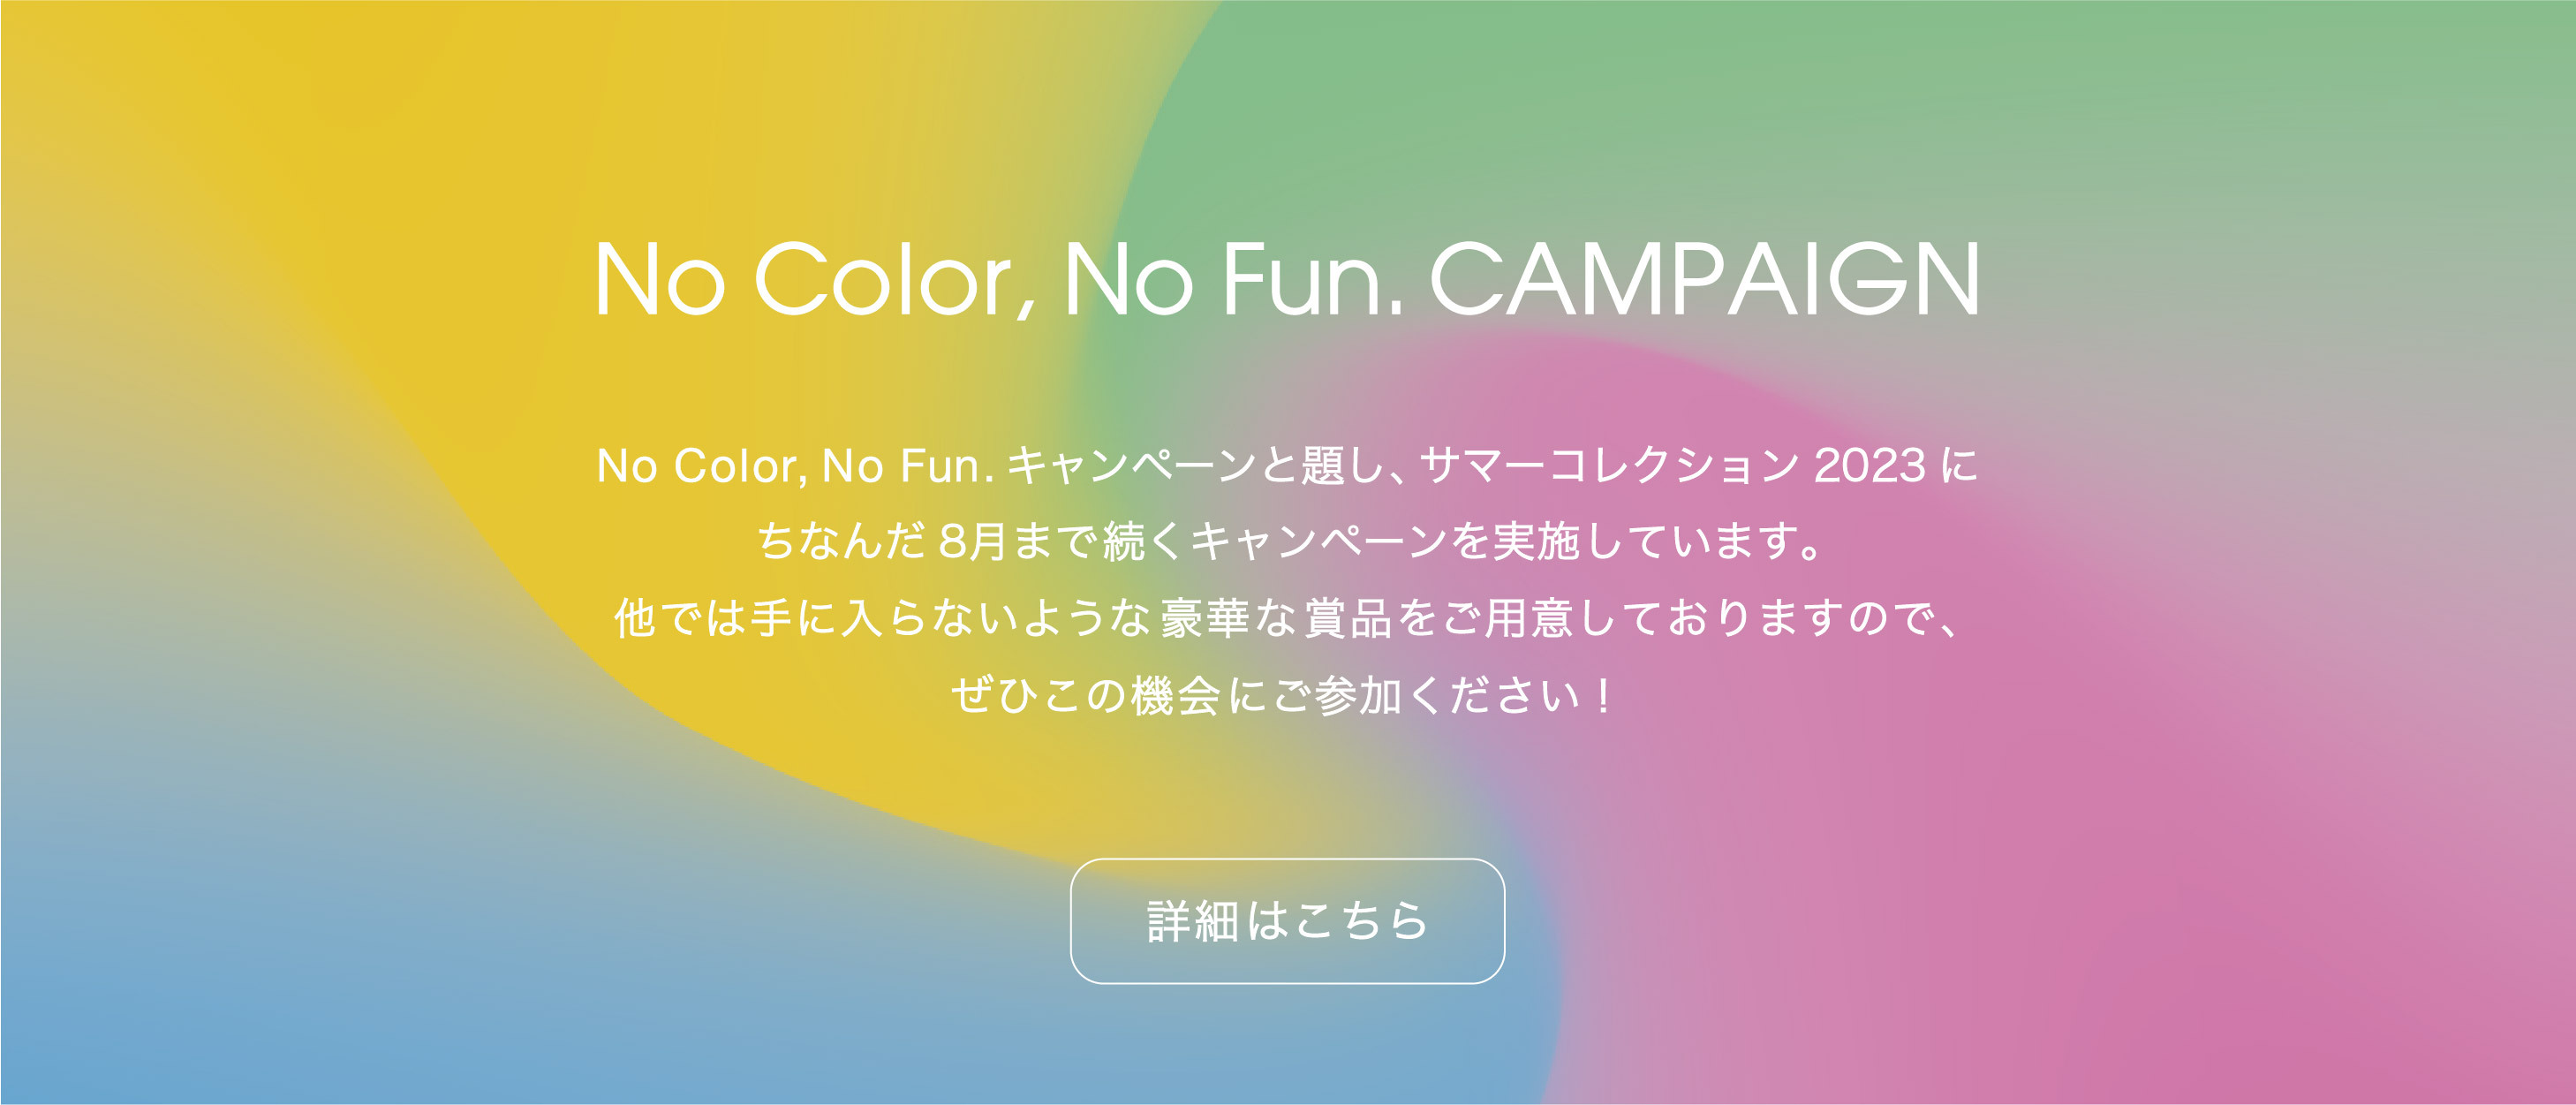 No Color, No fun. CAMPAIGN：No Color, No Fun.キャンペーンと題し、サマーコレクション2023にちなんだ8月まで続くキャンペーンを実施しています。他では手に入らないような豪華な賞品をご用意しておりますので、ぜひこの機会に参加してみてください！詳細はこちら